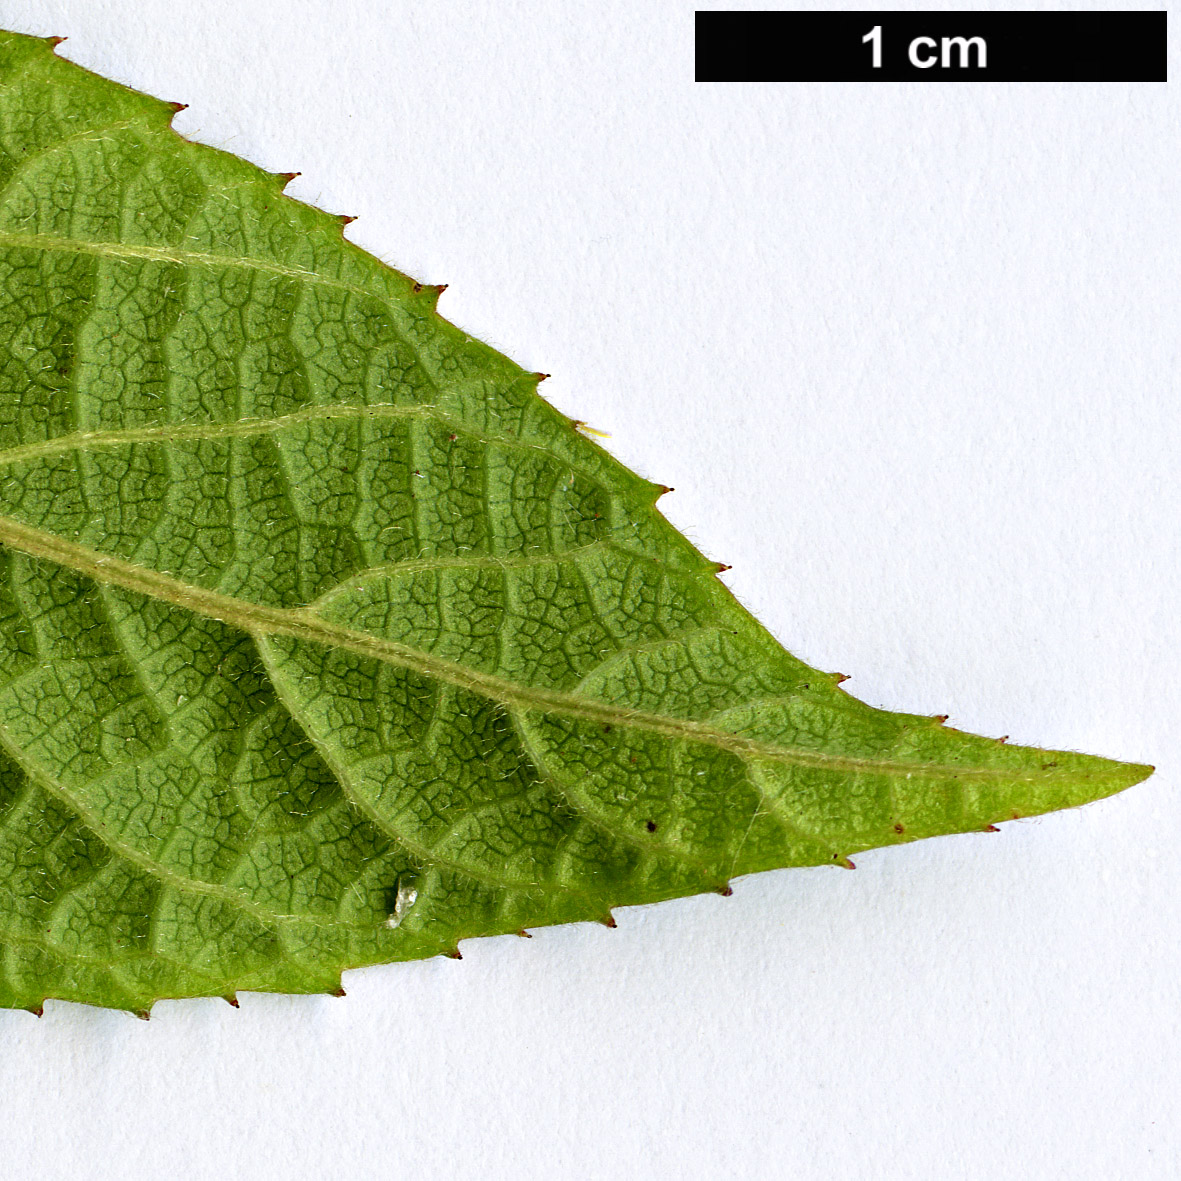 High resolution image: Family: Elaeocarpaceae - Genus: Aristotelia - Taxon: australasica